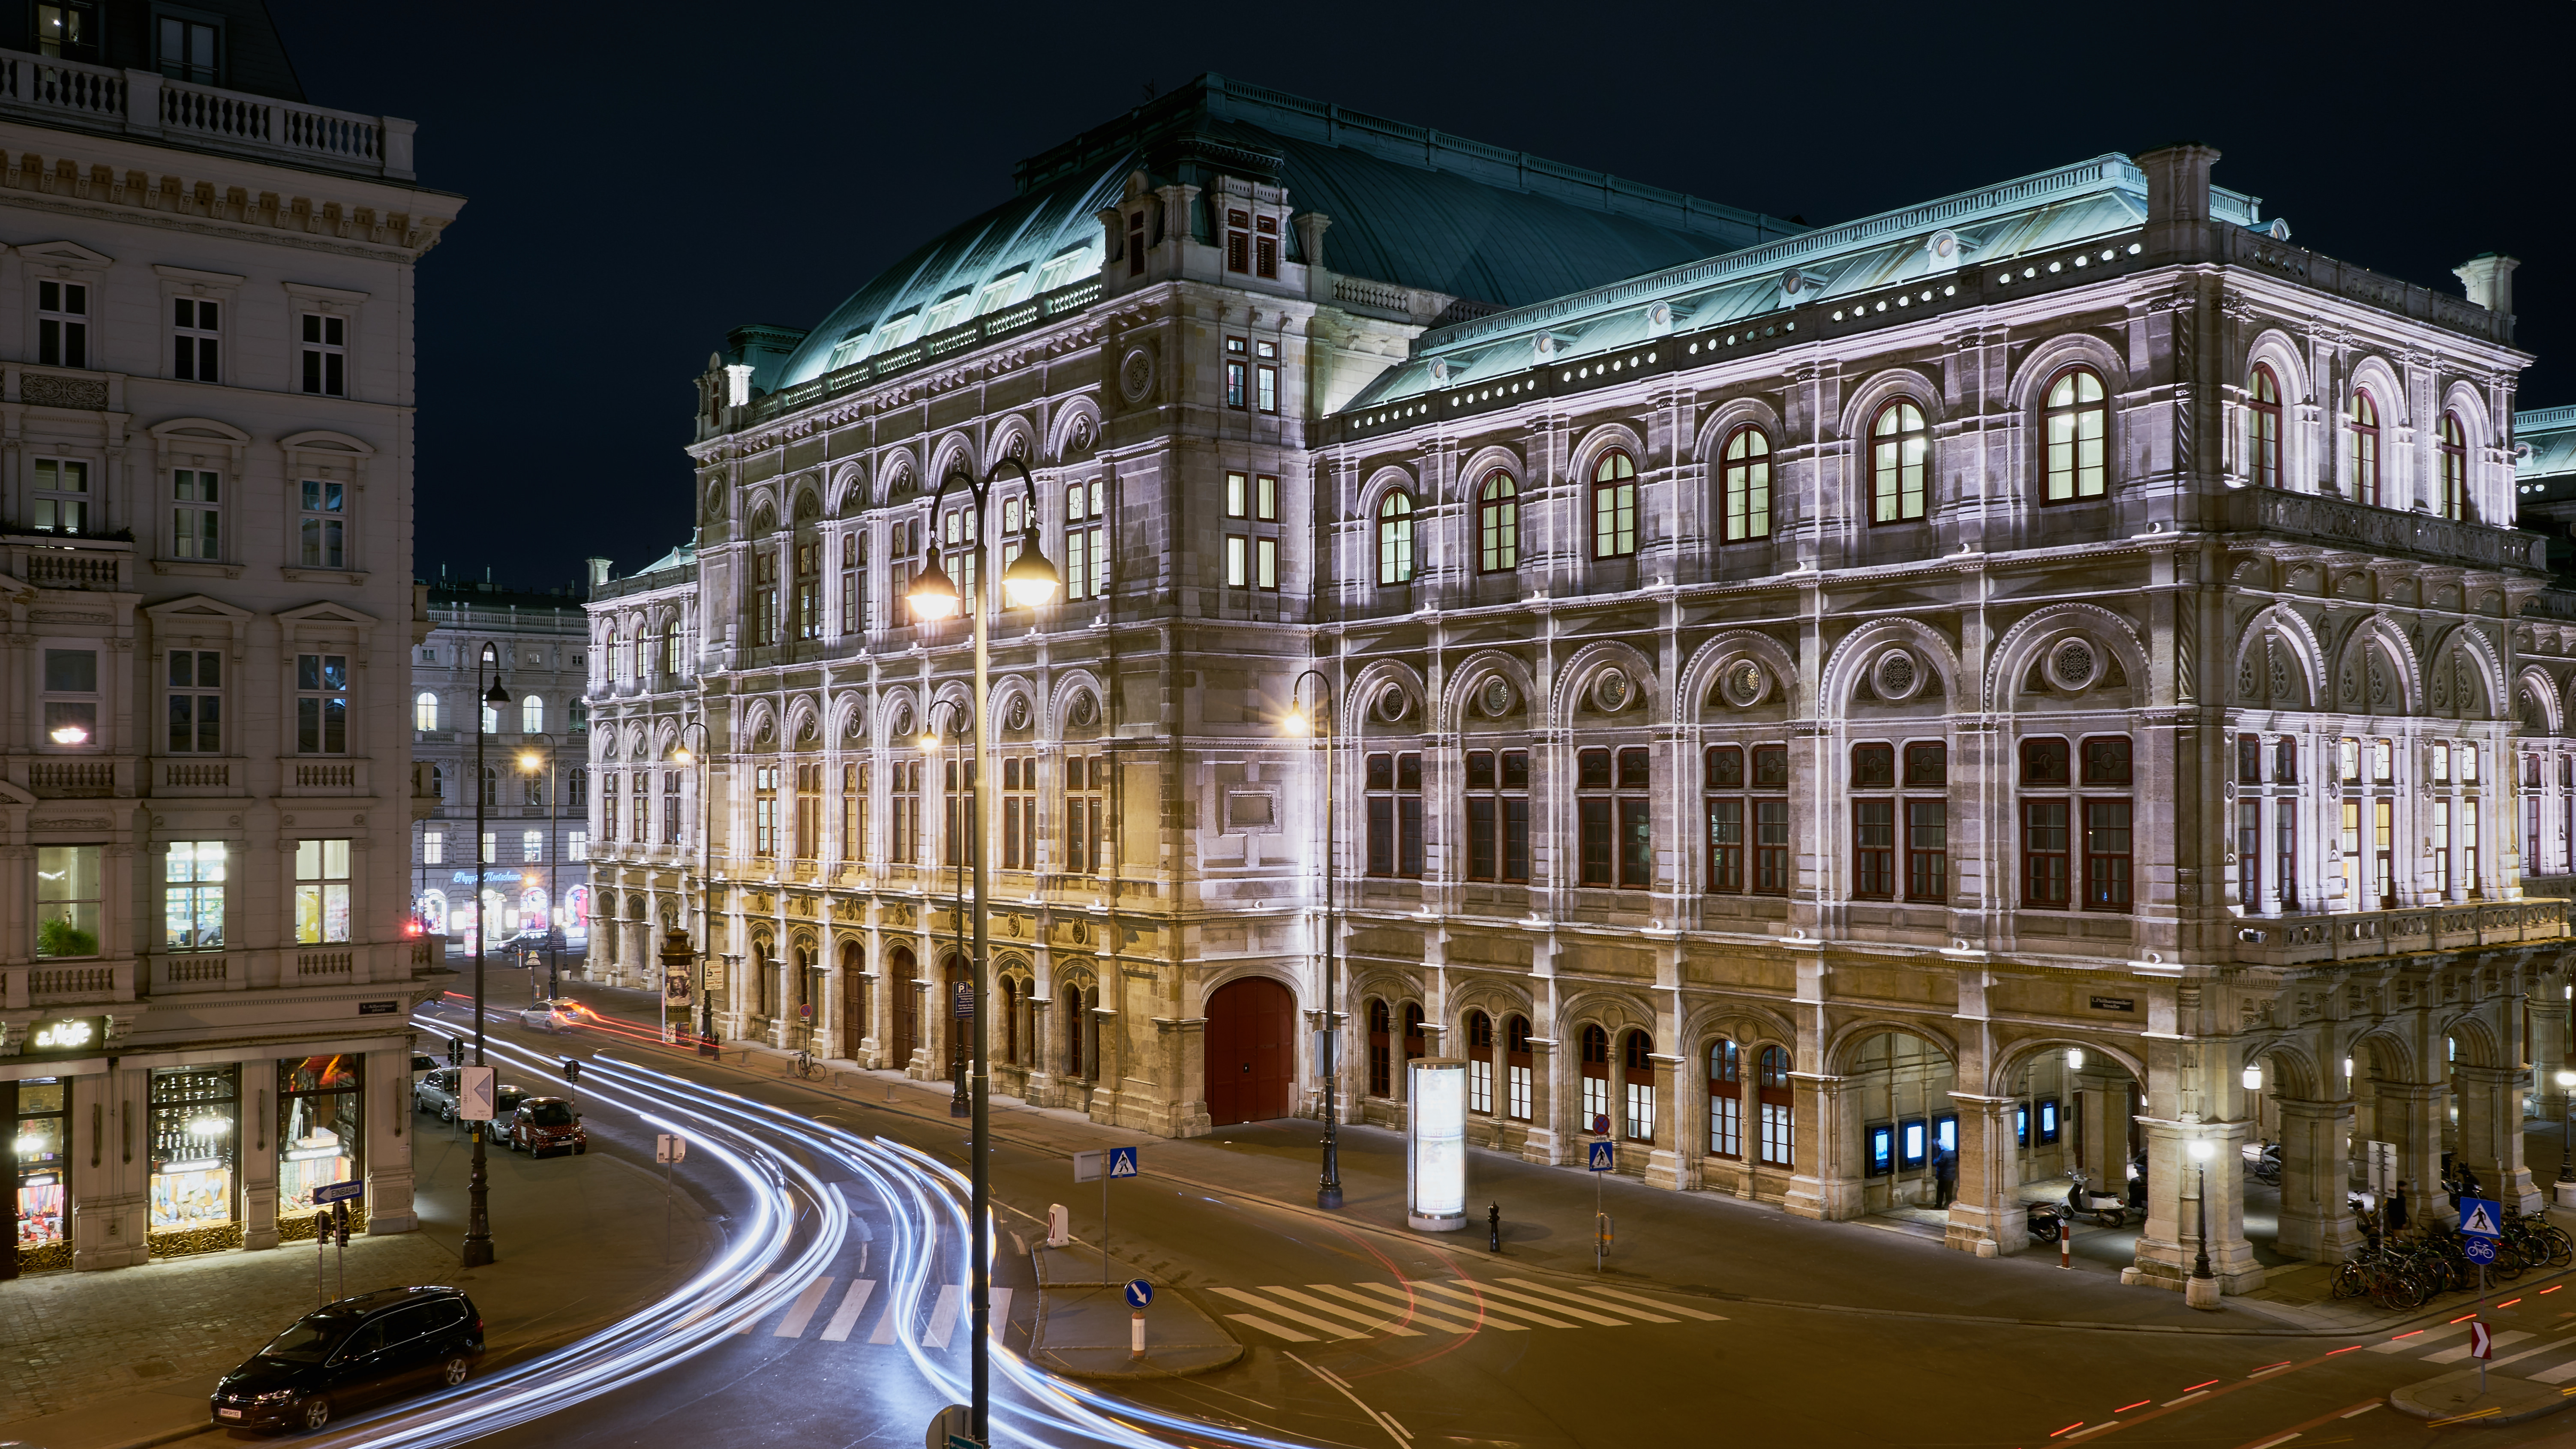 State Opera, Vienna, Austria